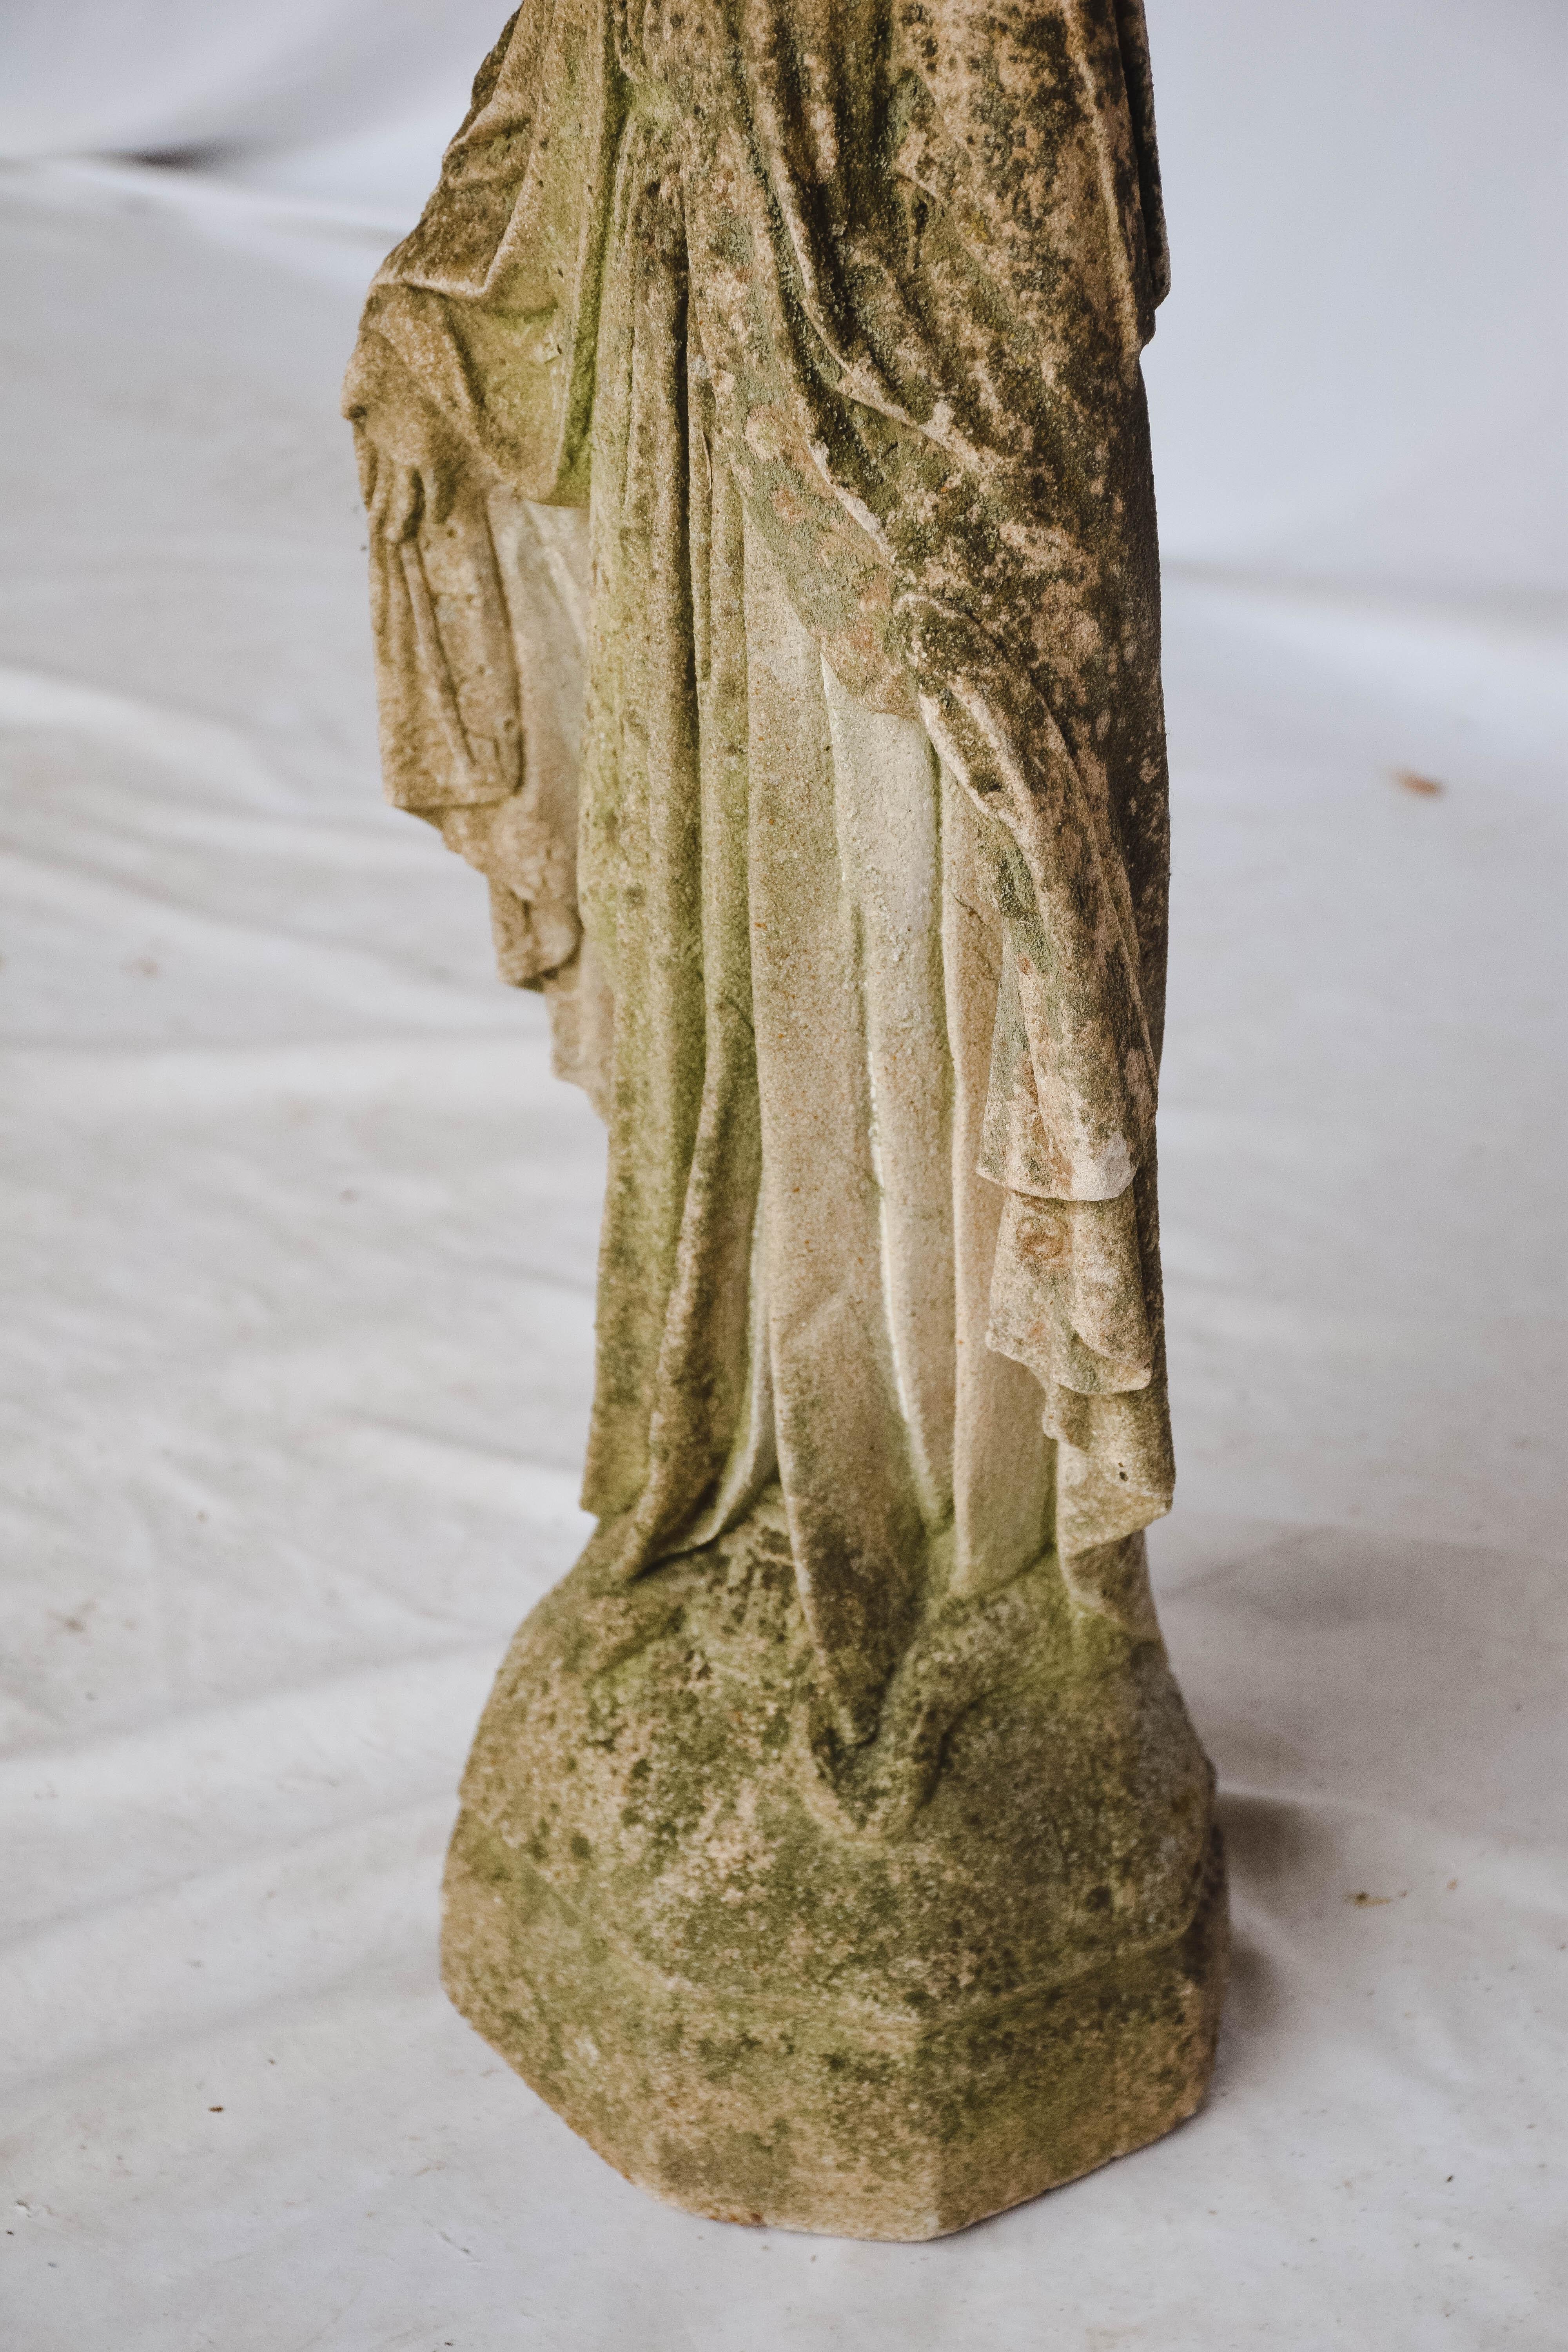 Concrete Virgin Mary Garden Statue 1